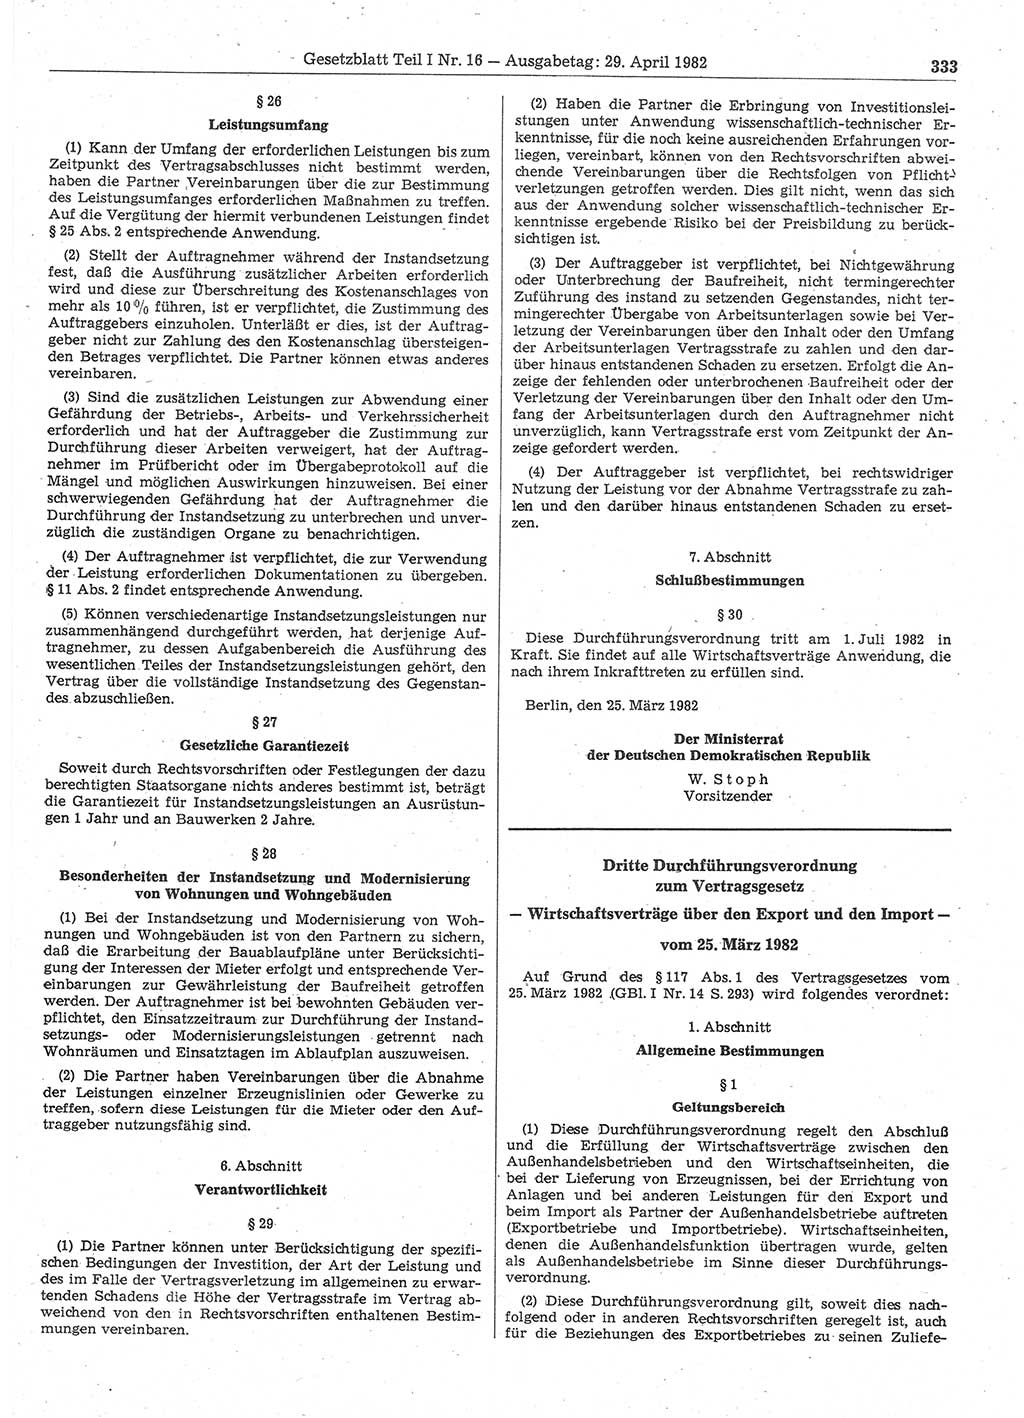 Gesetzblatt (GBl.) der Deutschen Demokratischen Republik (DDR) Teil Ⅰ 1982, Seite 333 (GBl. DDR Ⅰ 1982, S. 333)